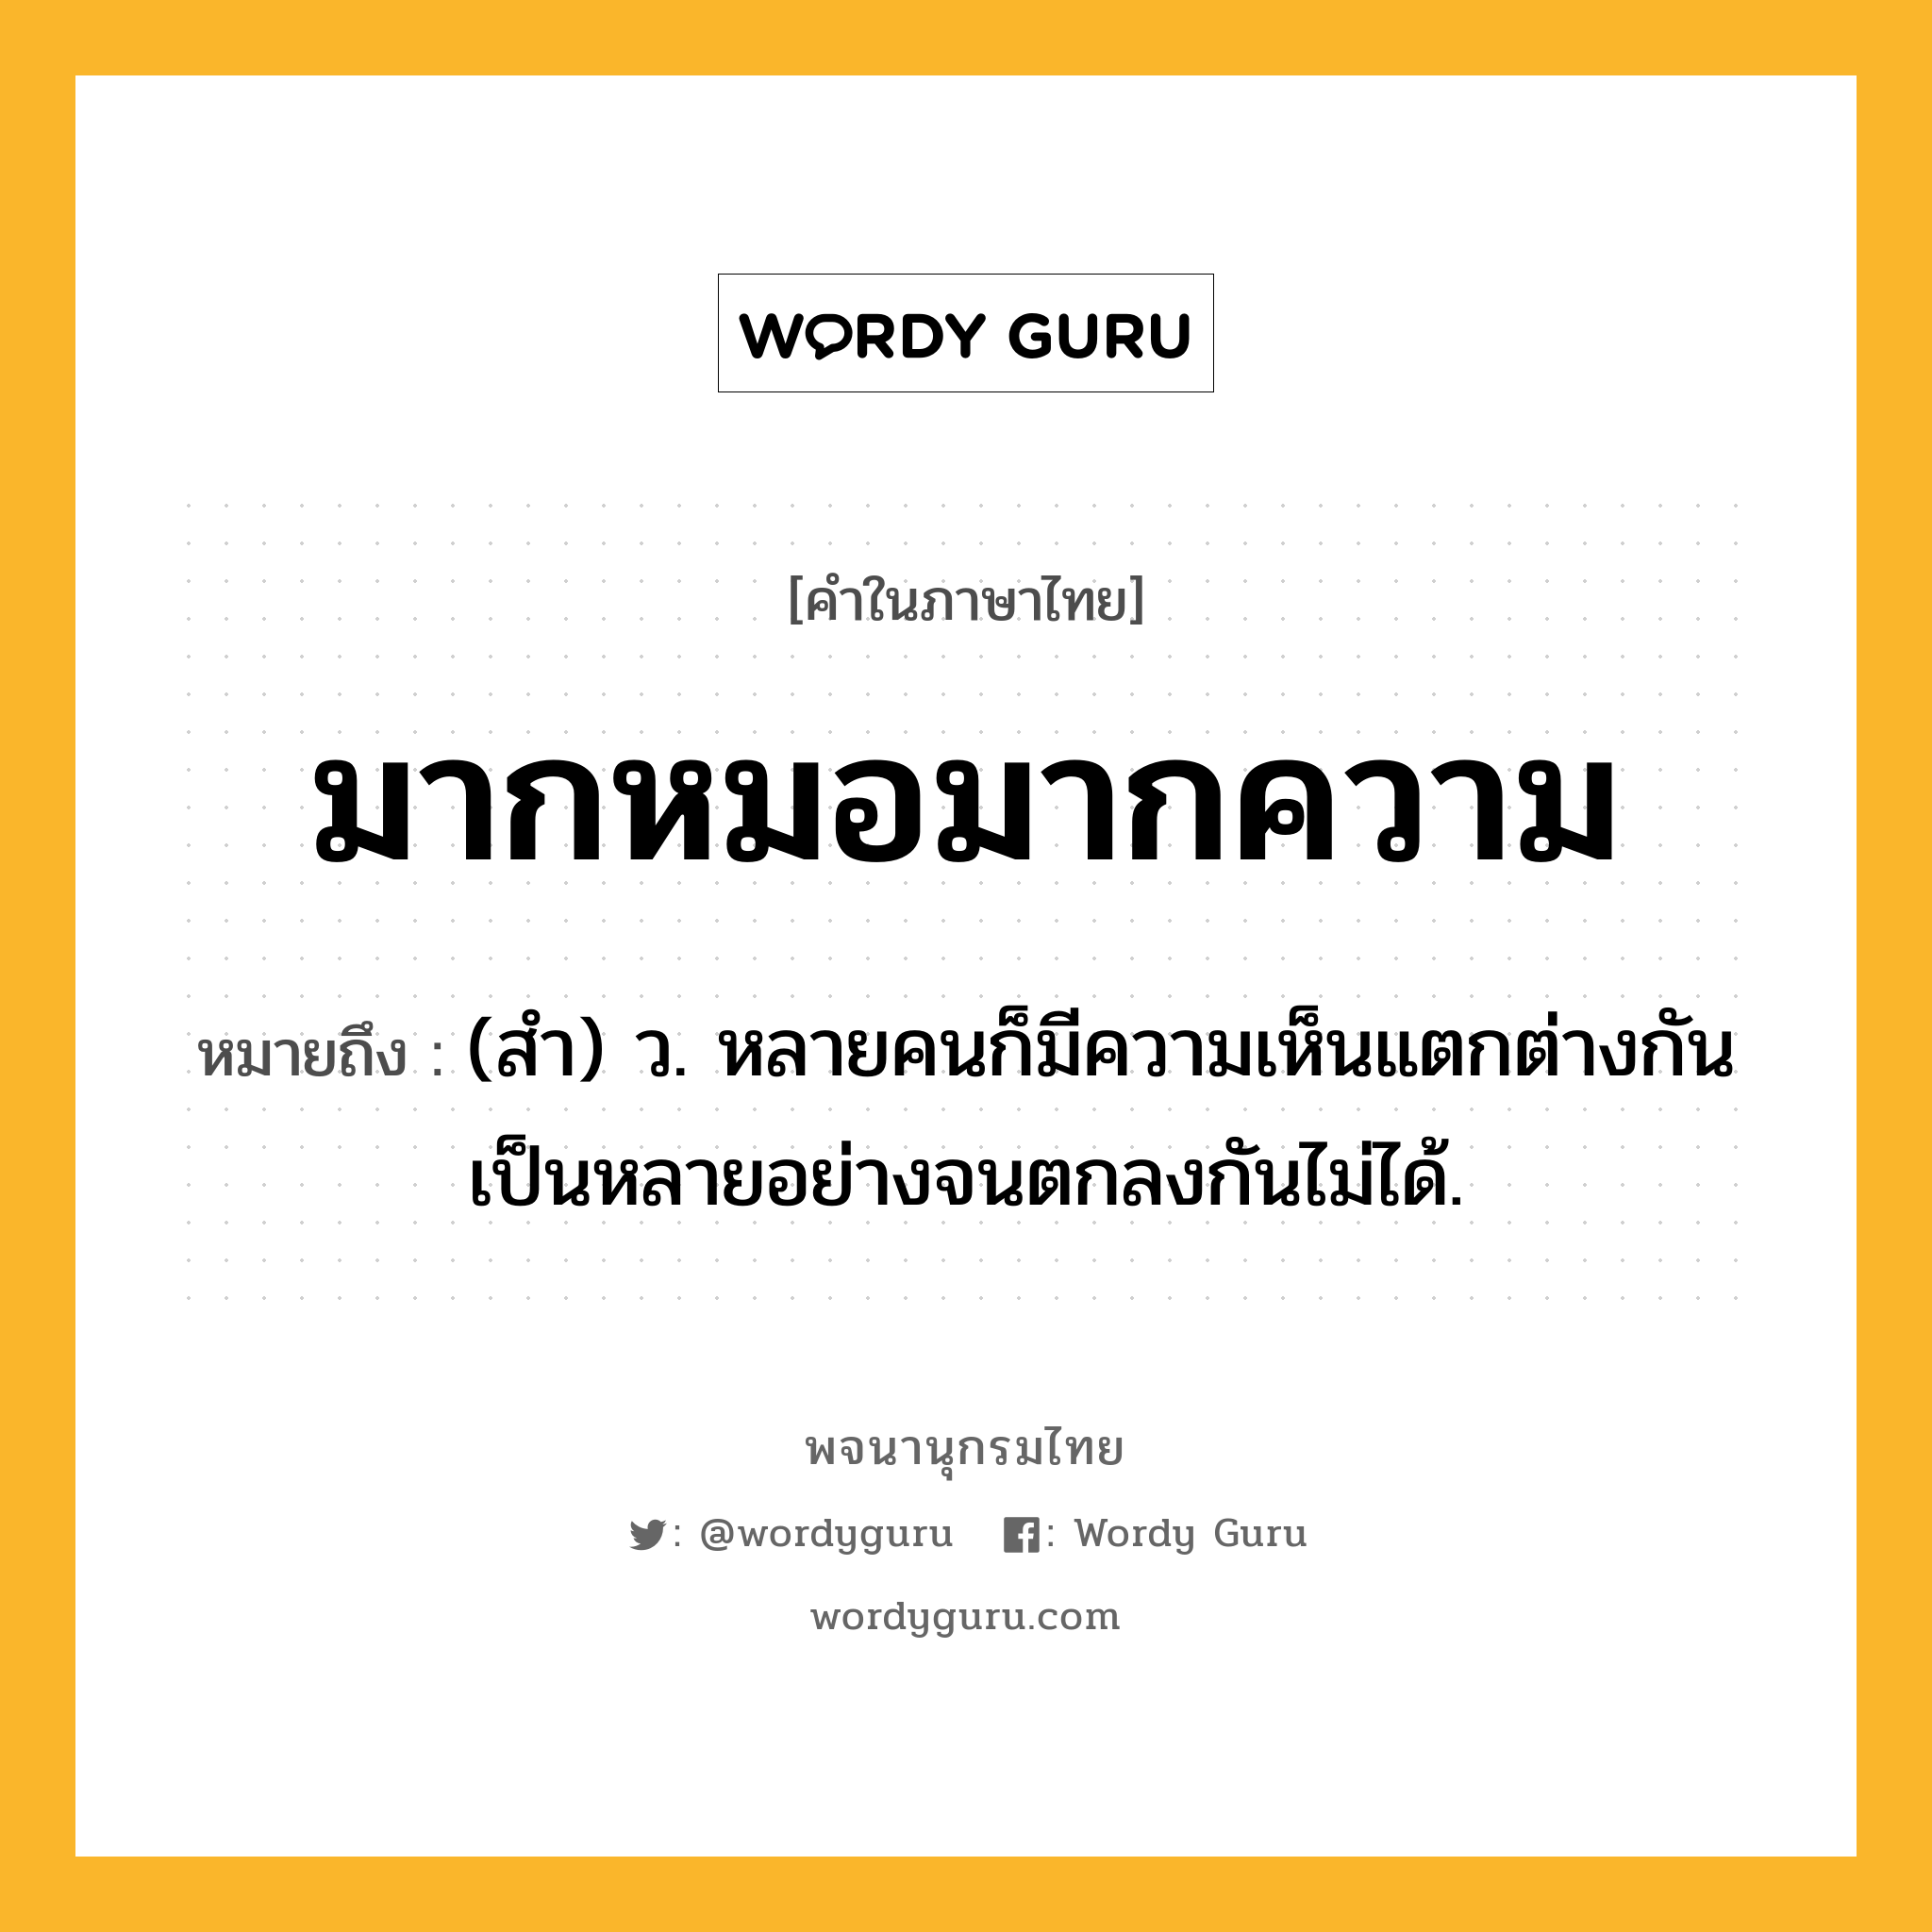 มากหมอมากความ หมายถึงอะไร?, คำในภาษาไทย มากหมอมากความ หมายถึง (สํา) ว. หลายคนก็มีความเห็นแตกต่างกันเป็นหลายอย่างจนตกลงกันไม่ได้.